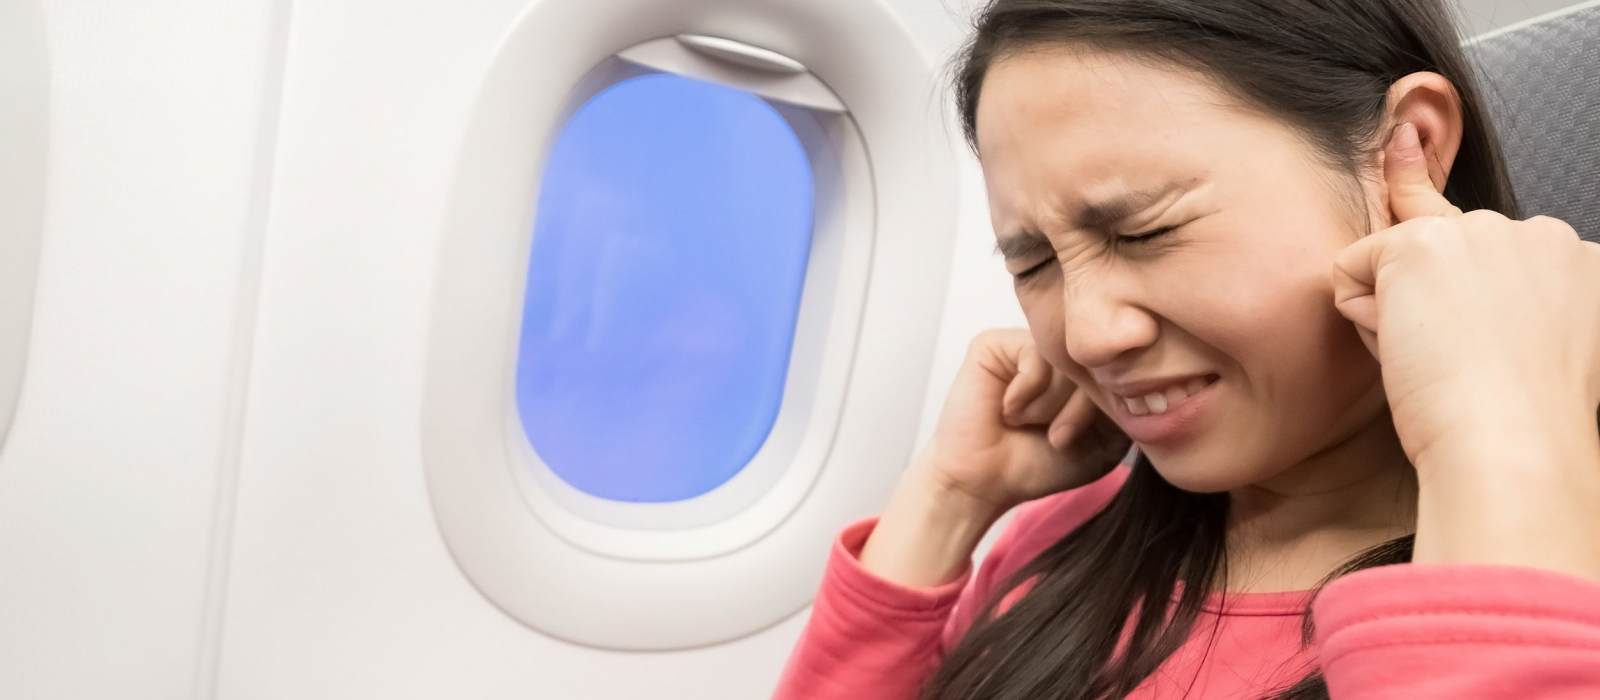 Astuces pour ne plus avoir mal aux oreilles en avion